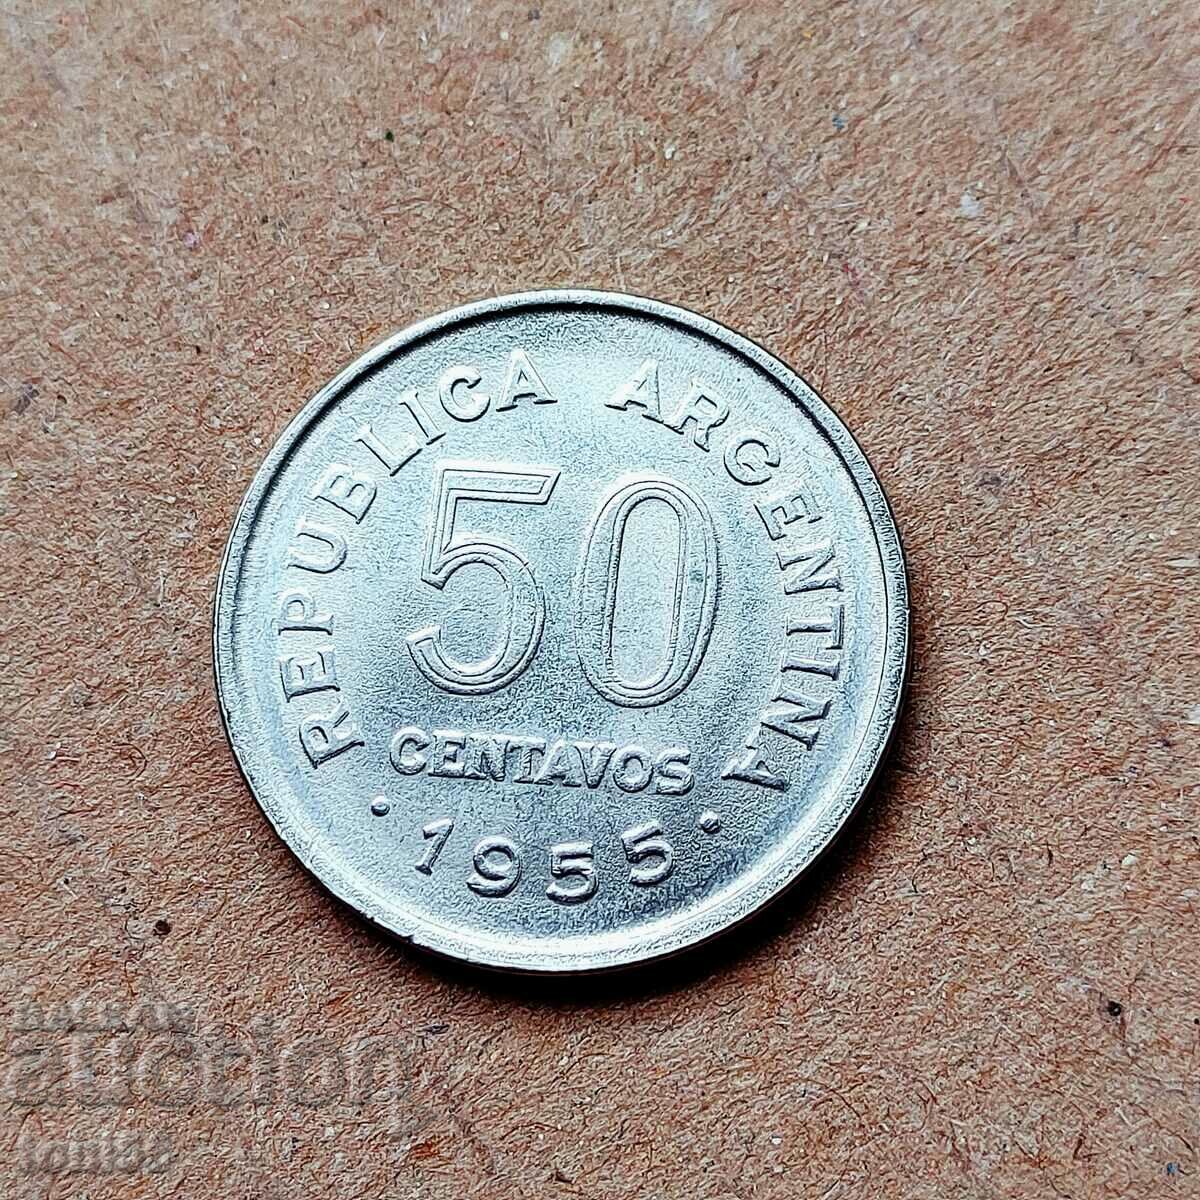 Аржентина 50 сентавос 1955 aUNC